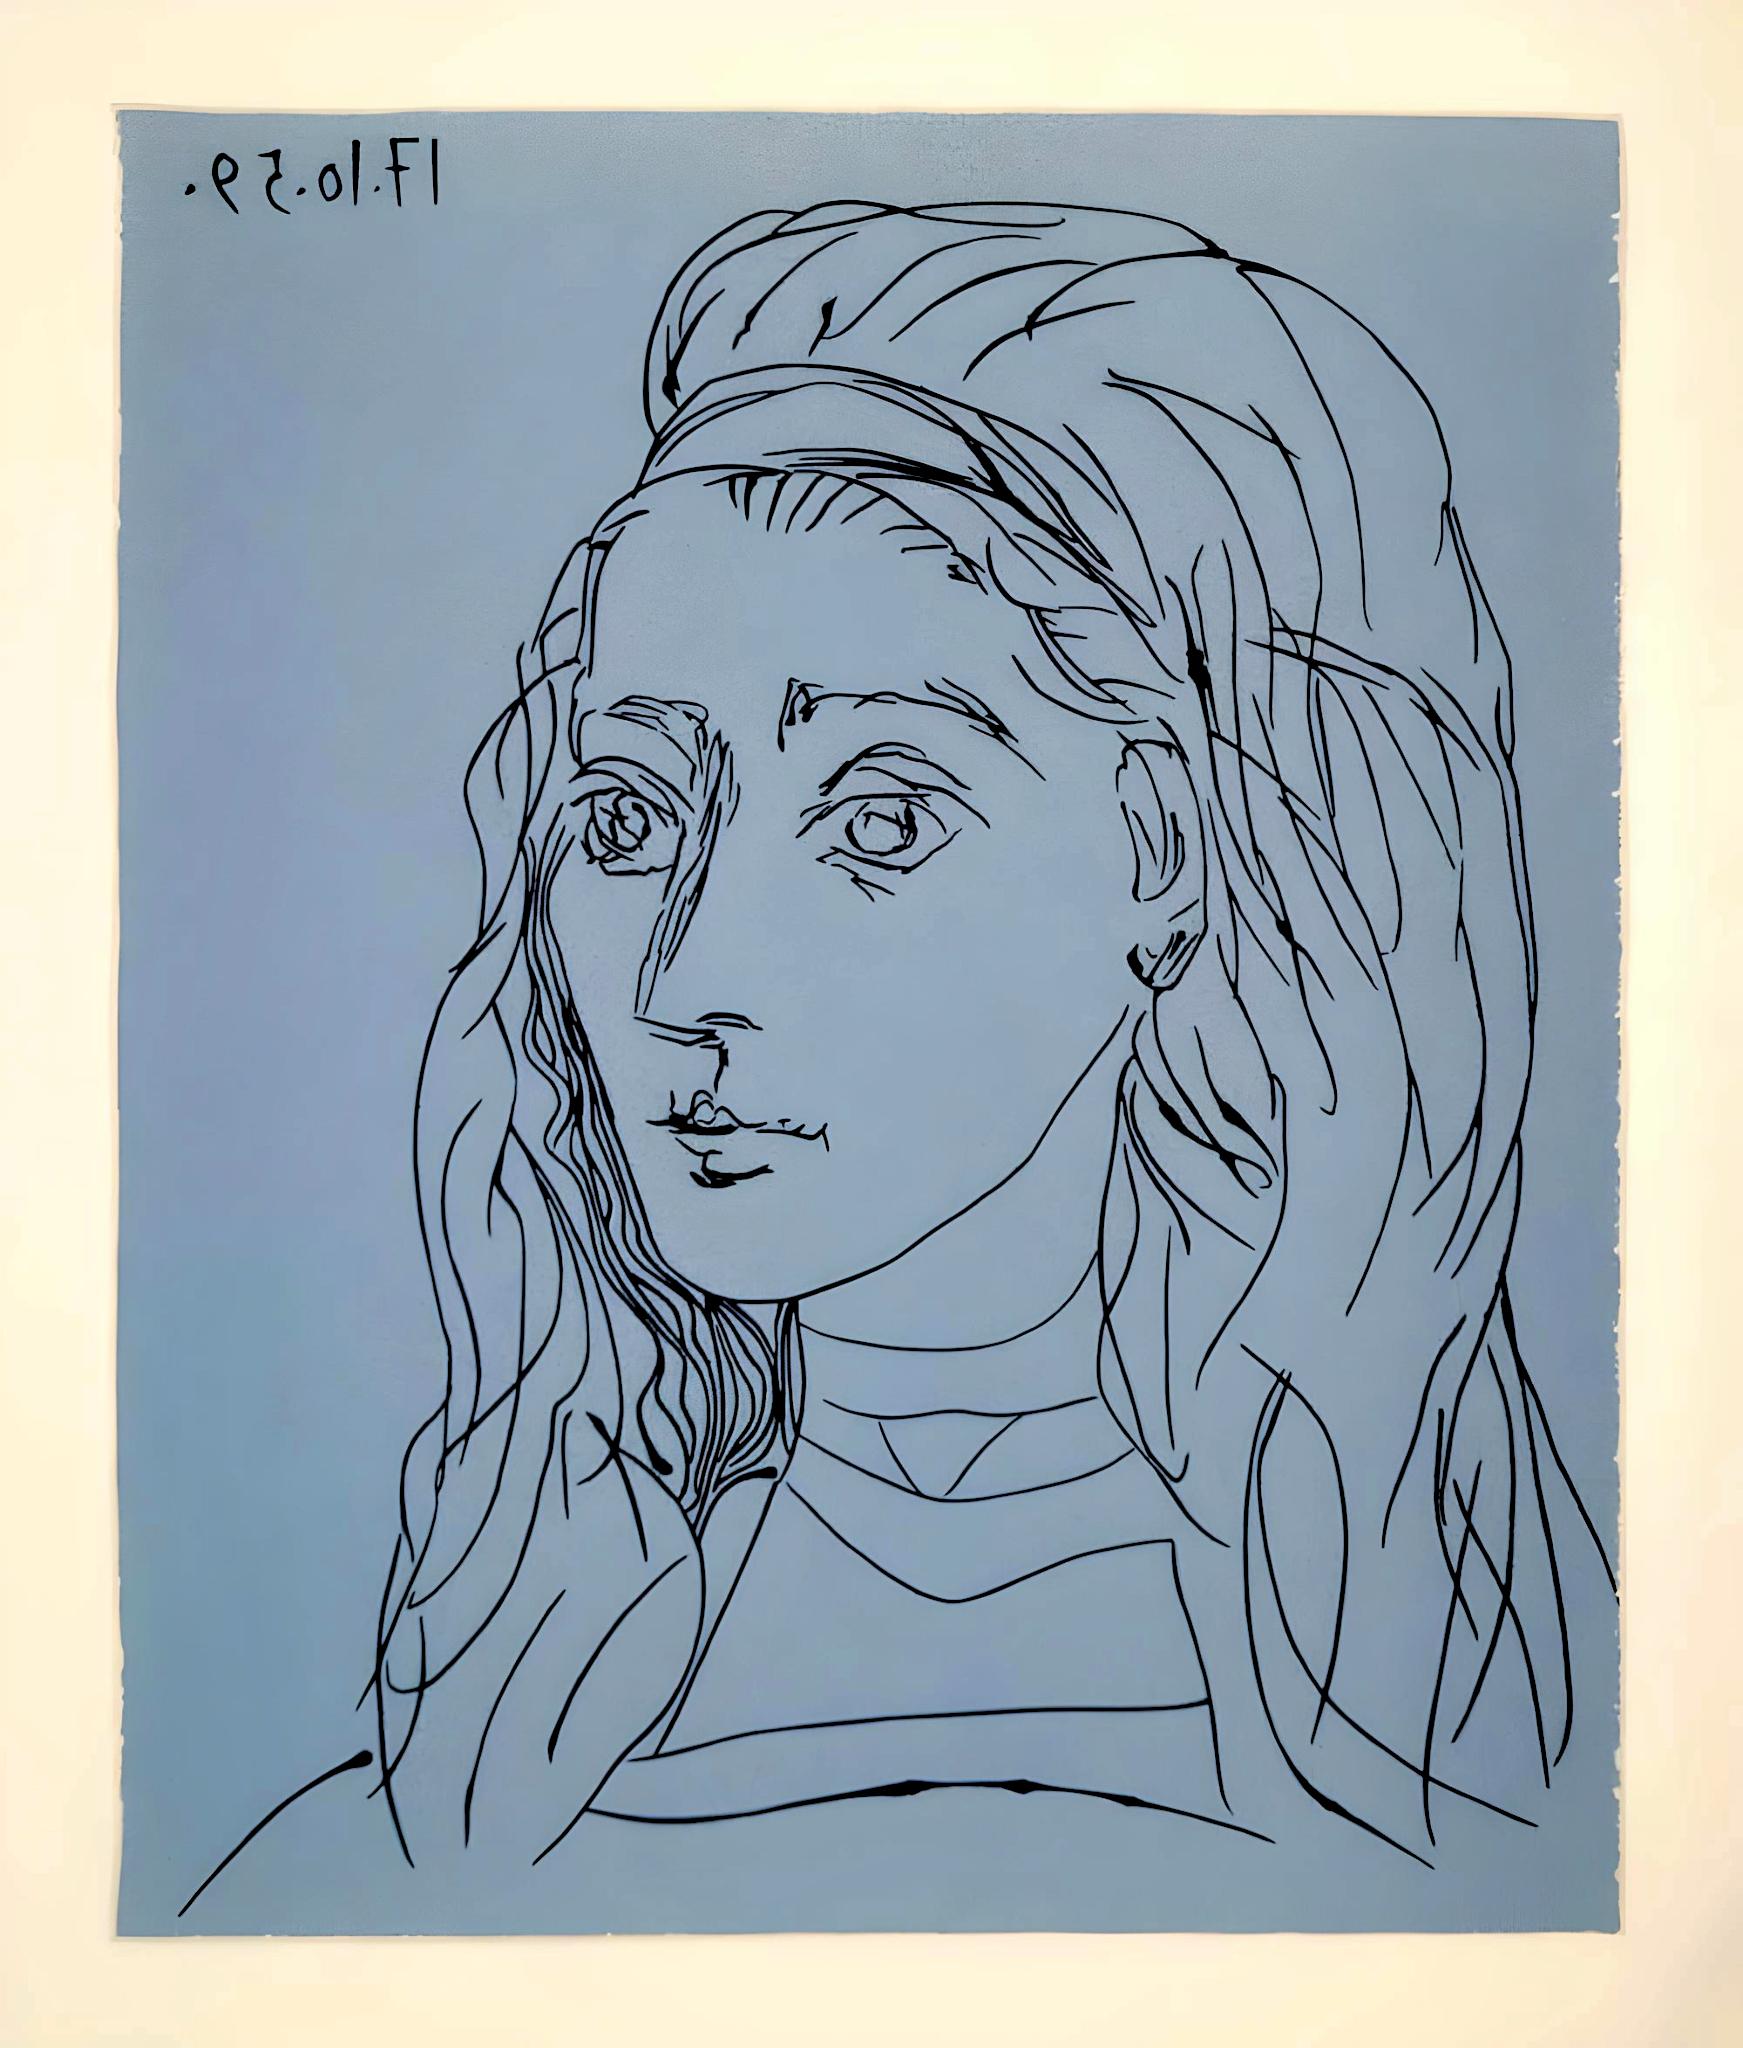 Picasso, Jacqueline, Éditions Cercle d’Art (after) - Cubist Print by Pablo Picasso